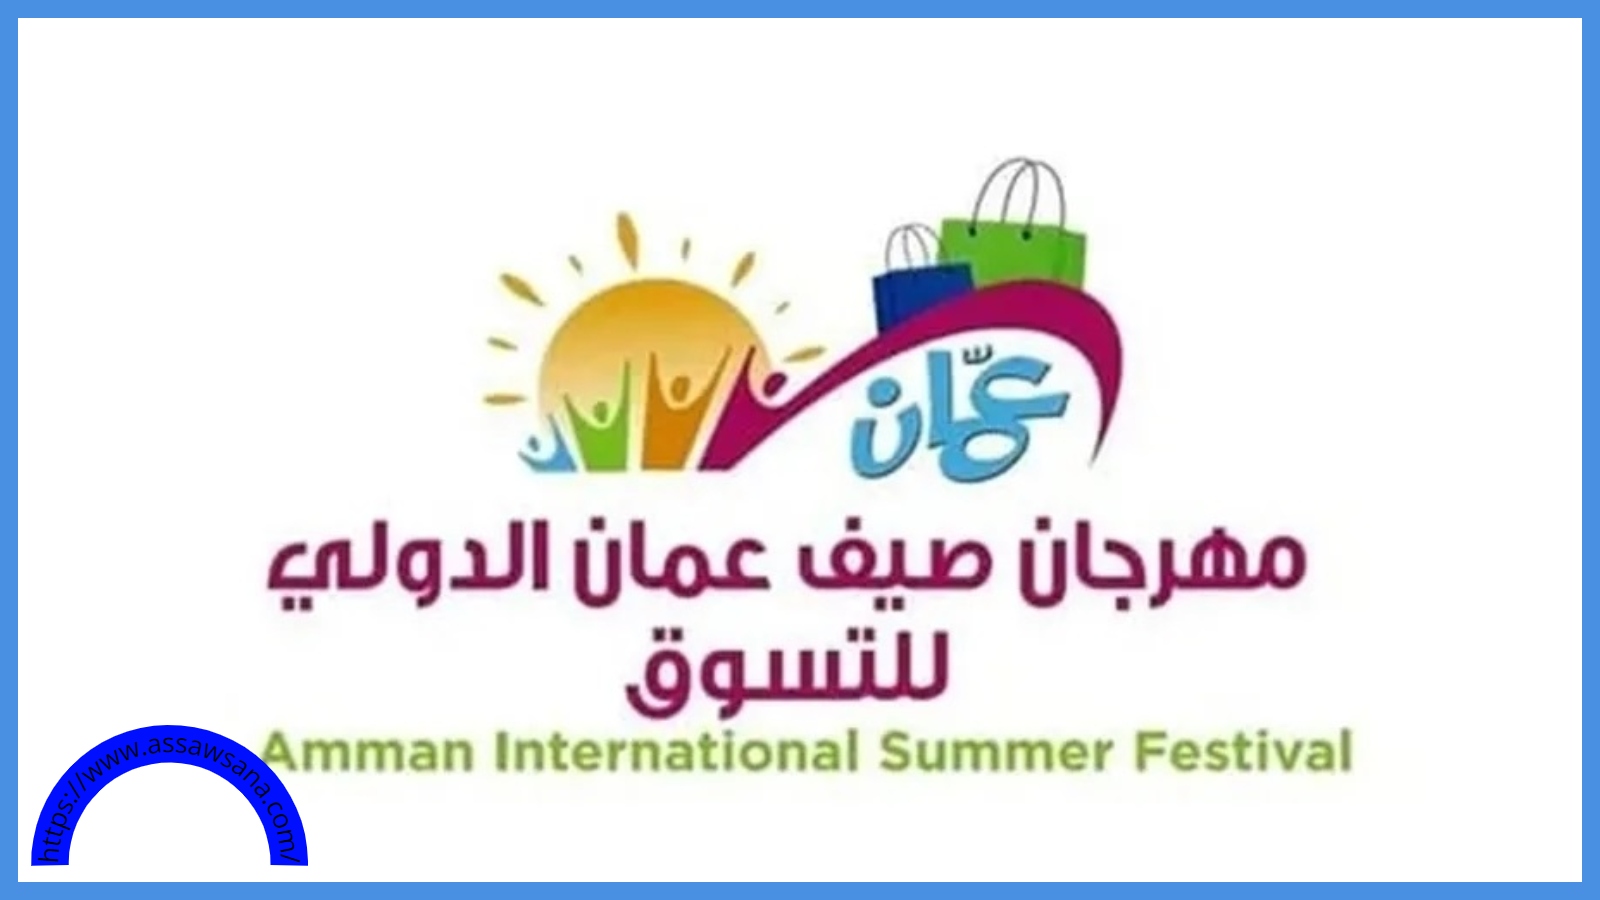 إنطلاق فعاليات مهرجان صيف عمان الدولي للتسوق غداً